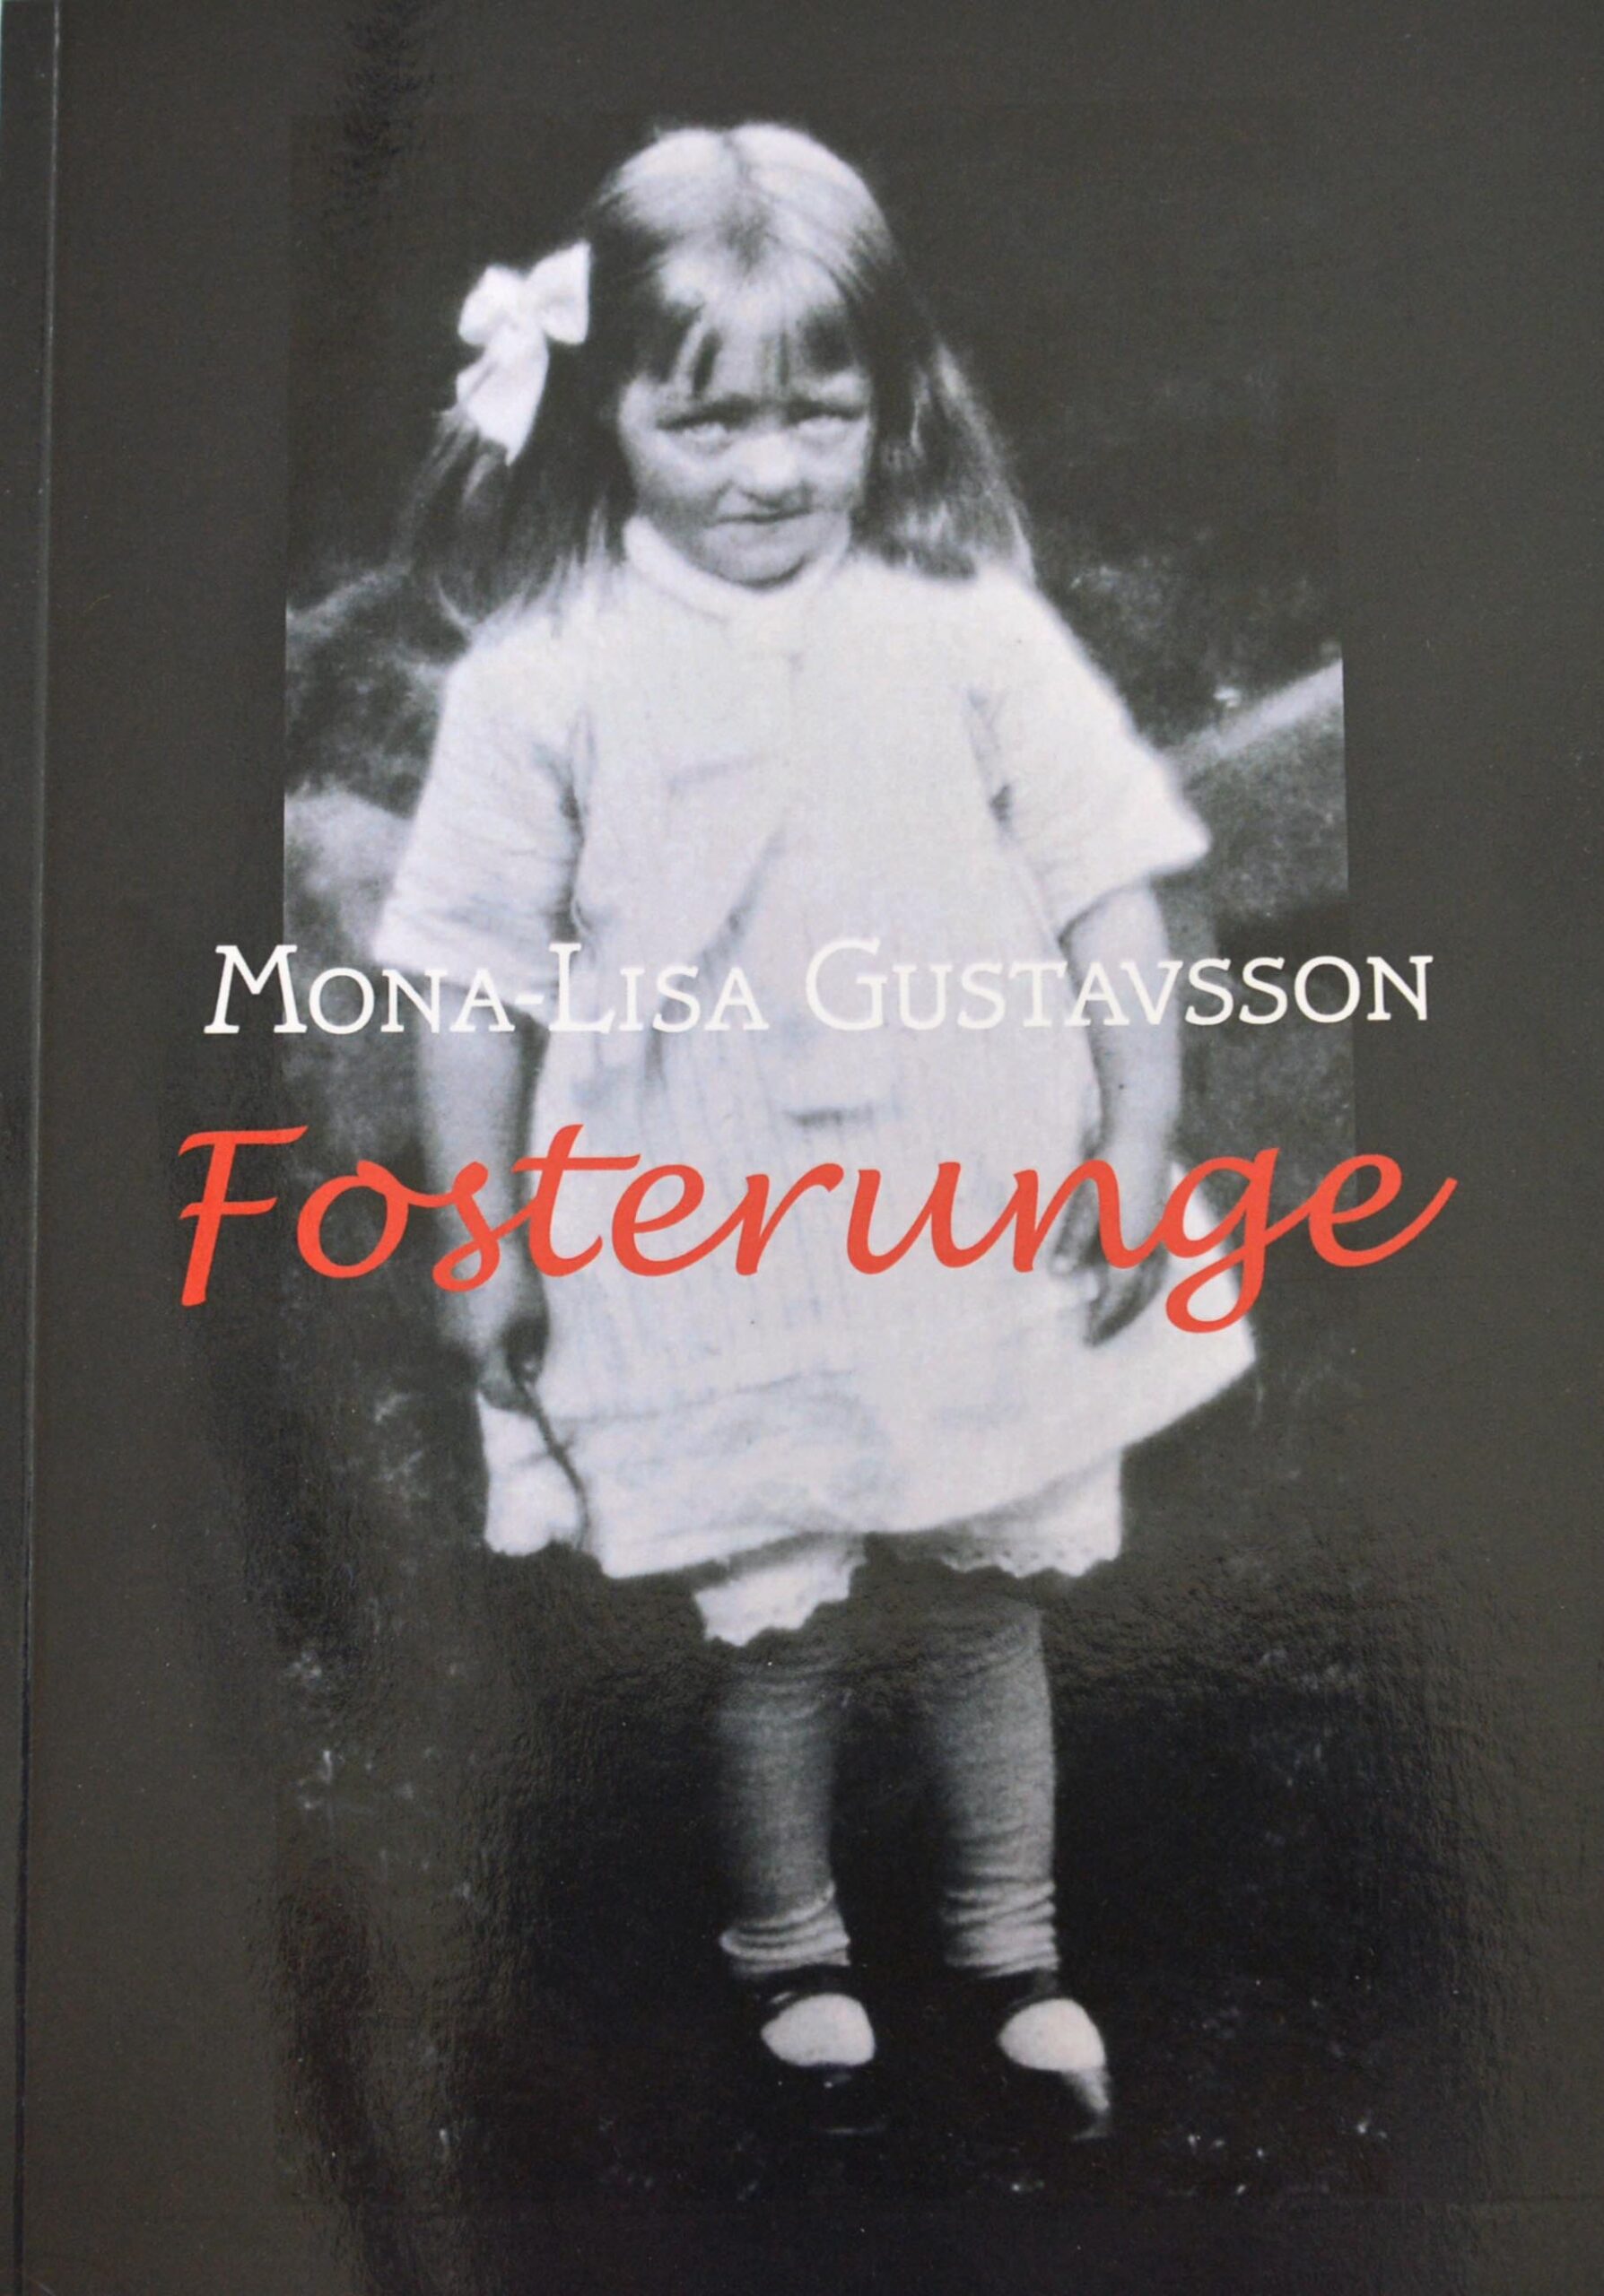 Boken Fosterunge, författare 95-åriga Mona-Lisa Gustavsson, Uggleskytten förlag, utgivningsår 2021, om att vara fosterunge 